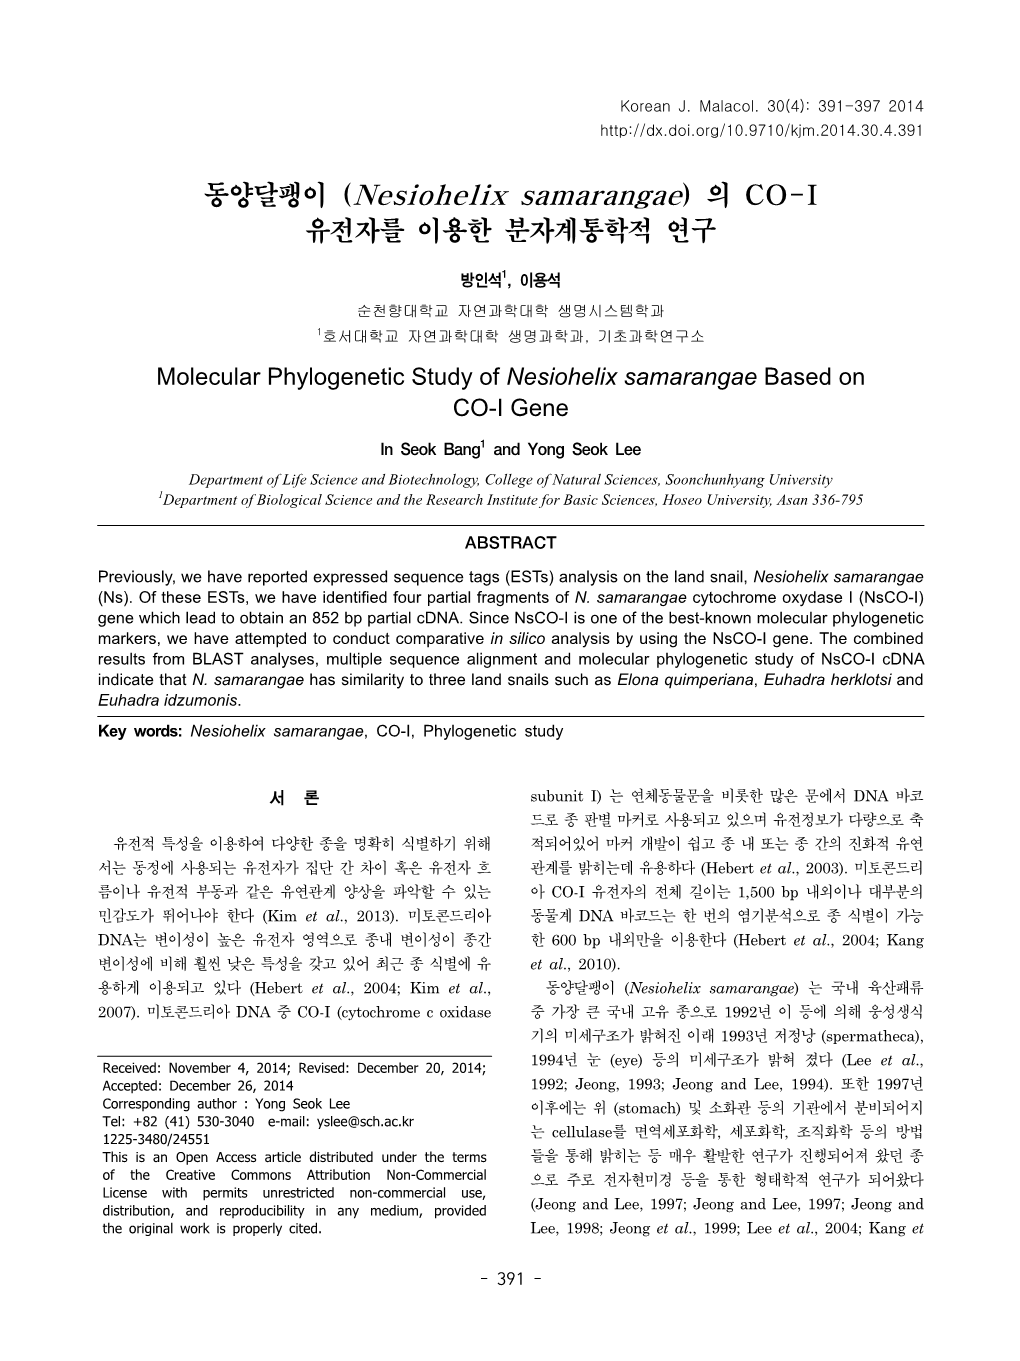 동양달팽이 (Nesiohelix Samarangae) 의 CO-I 유전자를 이용한 분자계통학적 연구